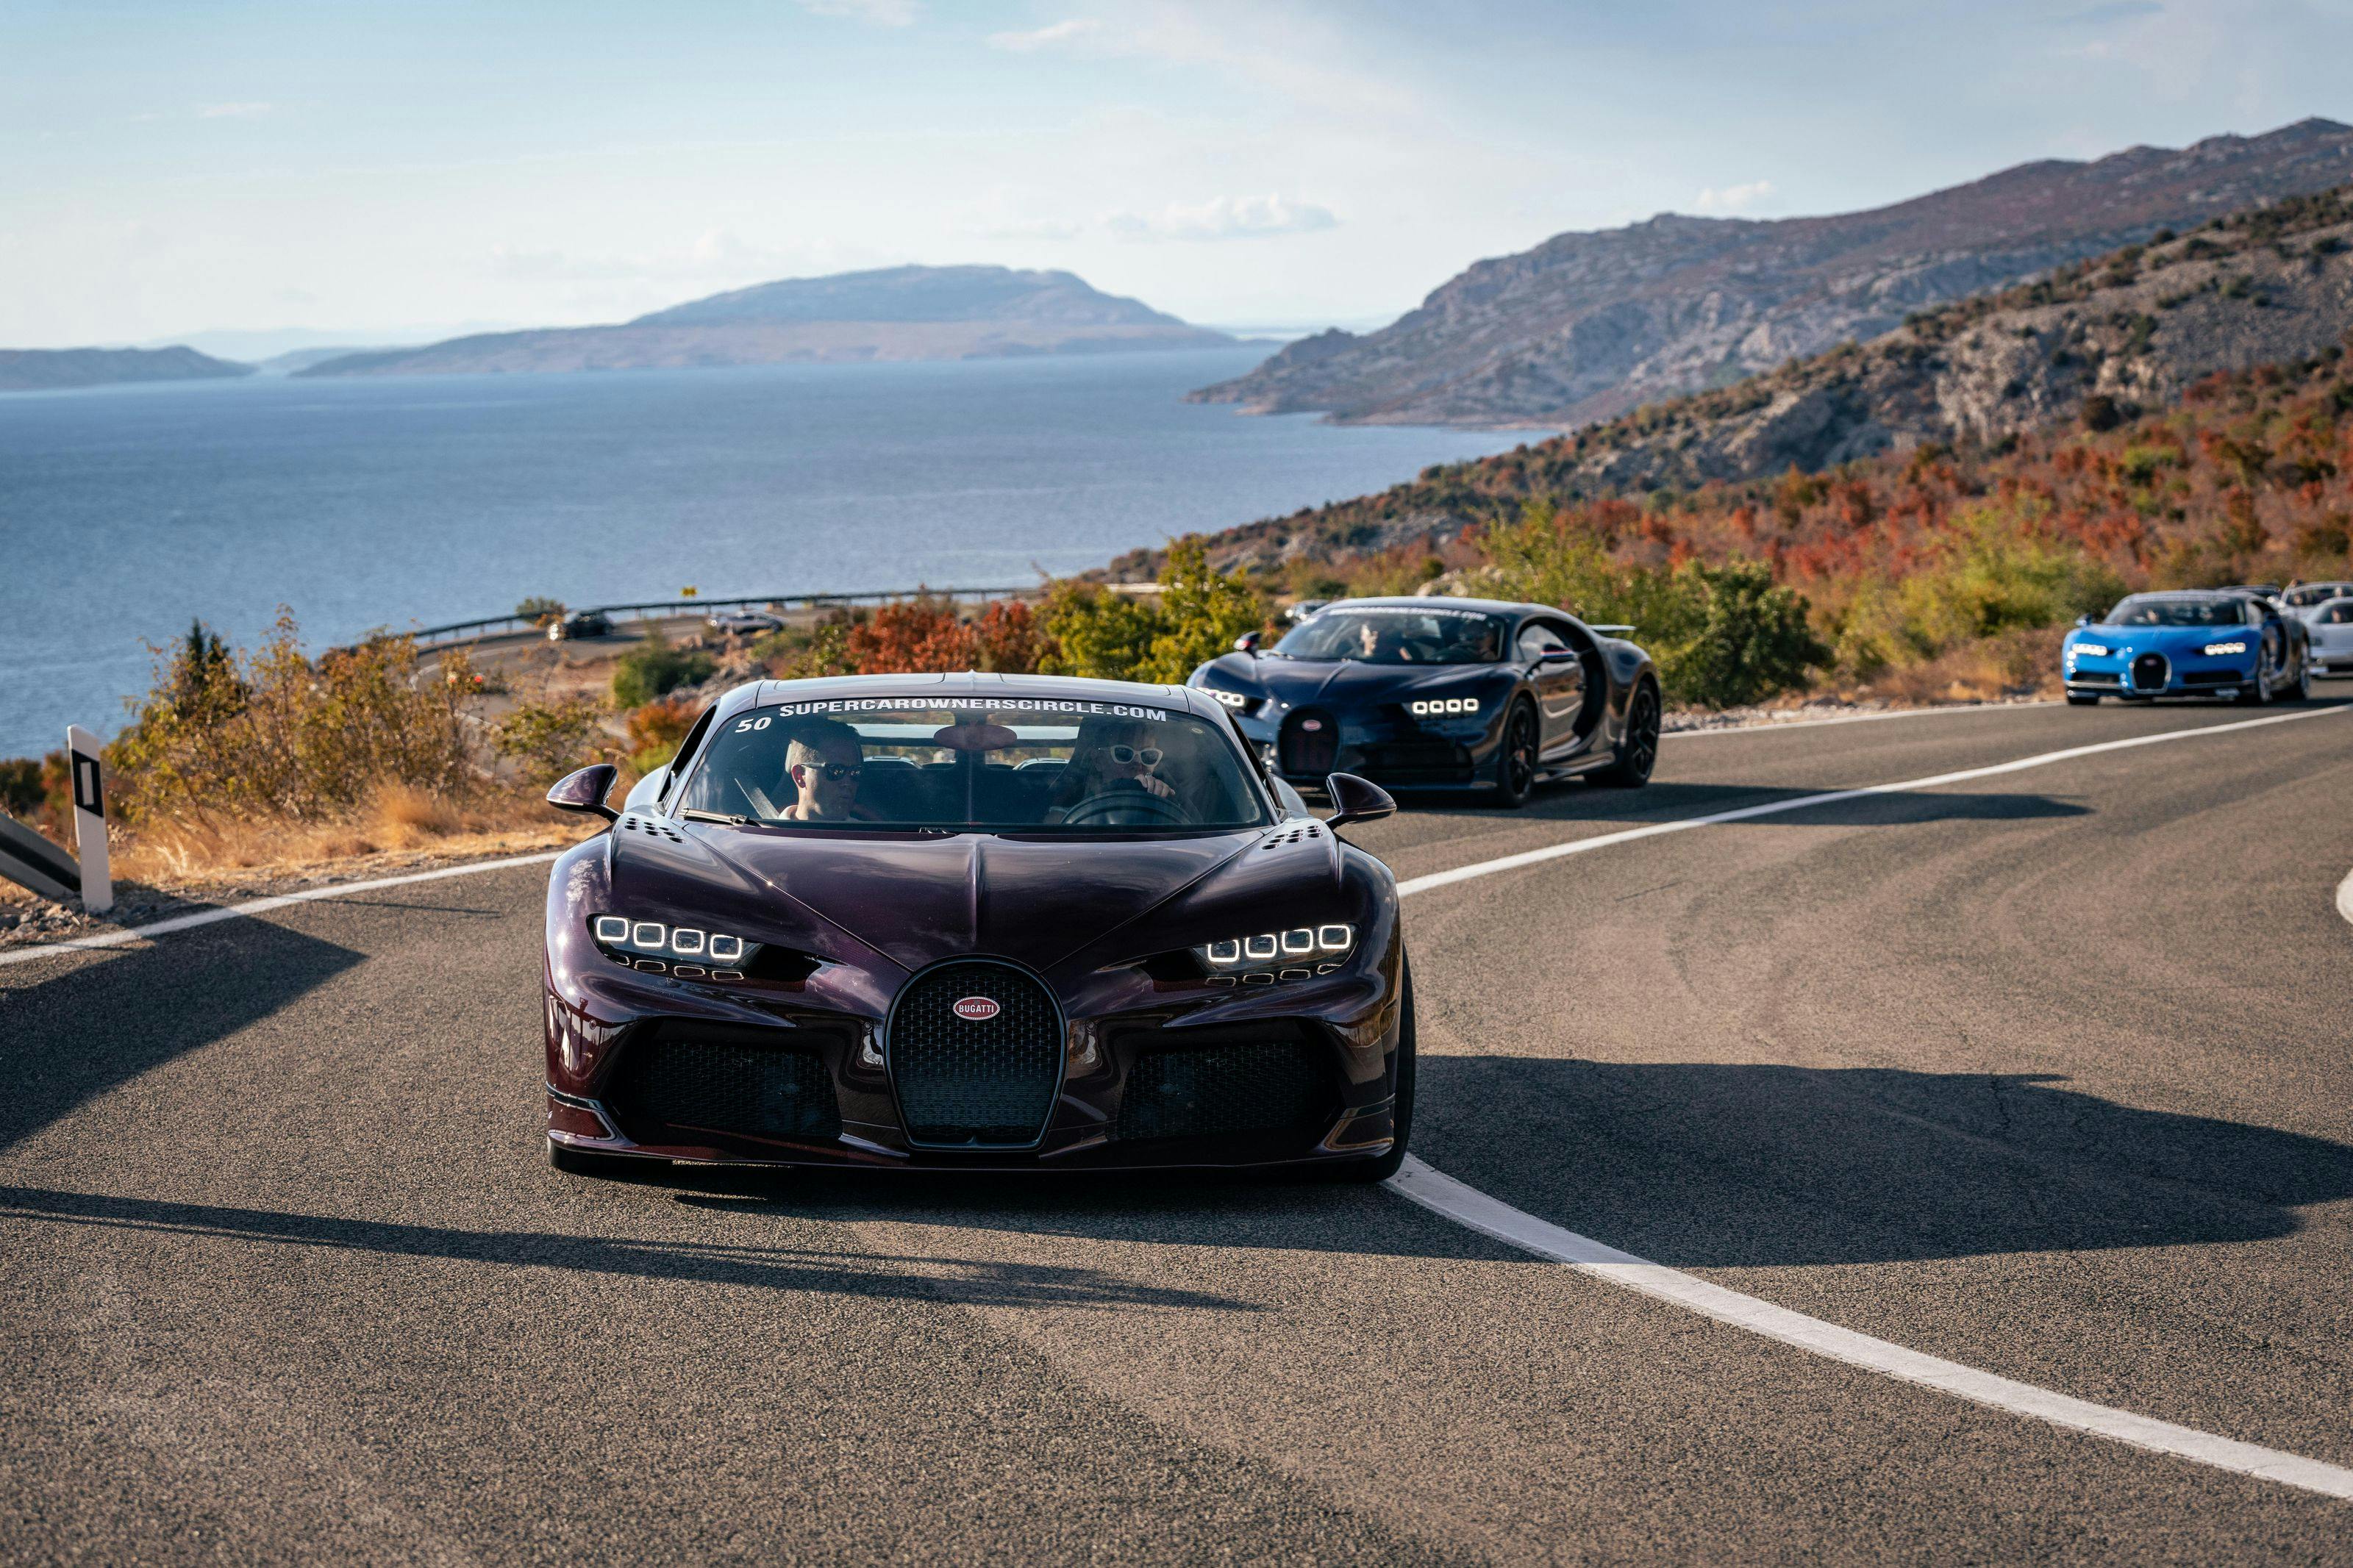 Conçue pour la conduite : La Voiture Noire fait partie des légendes Bugatti présentes au Supercar Owners Circle en Croatie